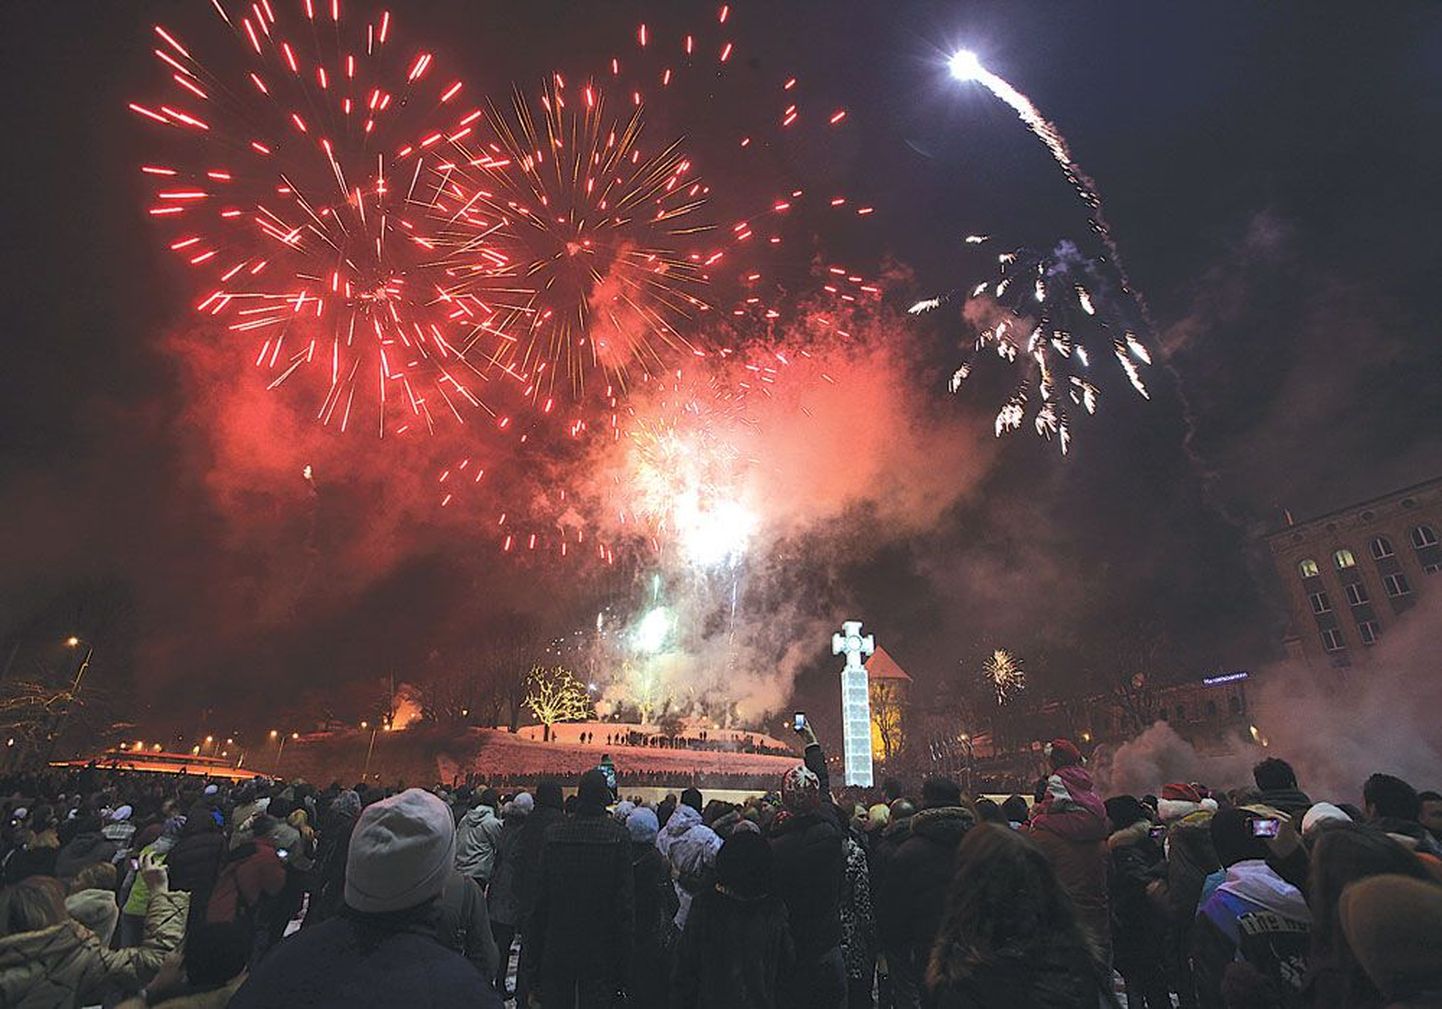 В прошлом году полюбоваться ярким новогодним фейерверком на площадь Вабадузе в Таллинне пришли многие жители и гости столицы. Зрелище было незабываемое.